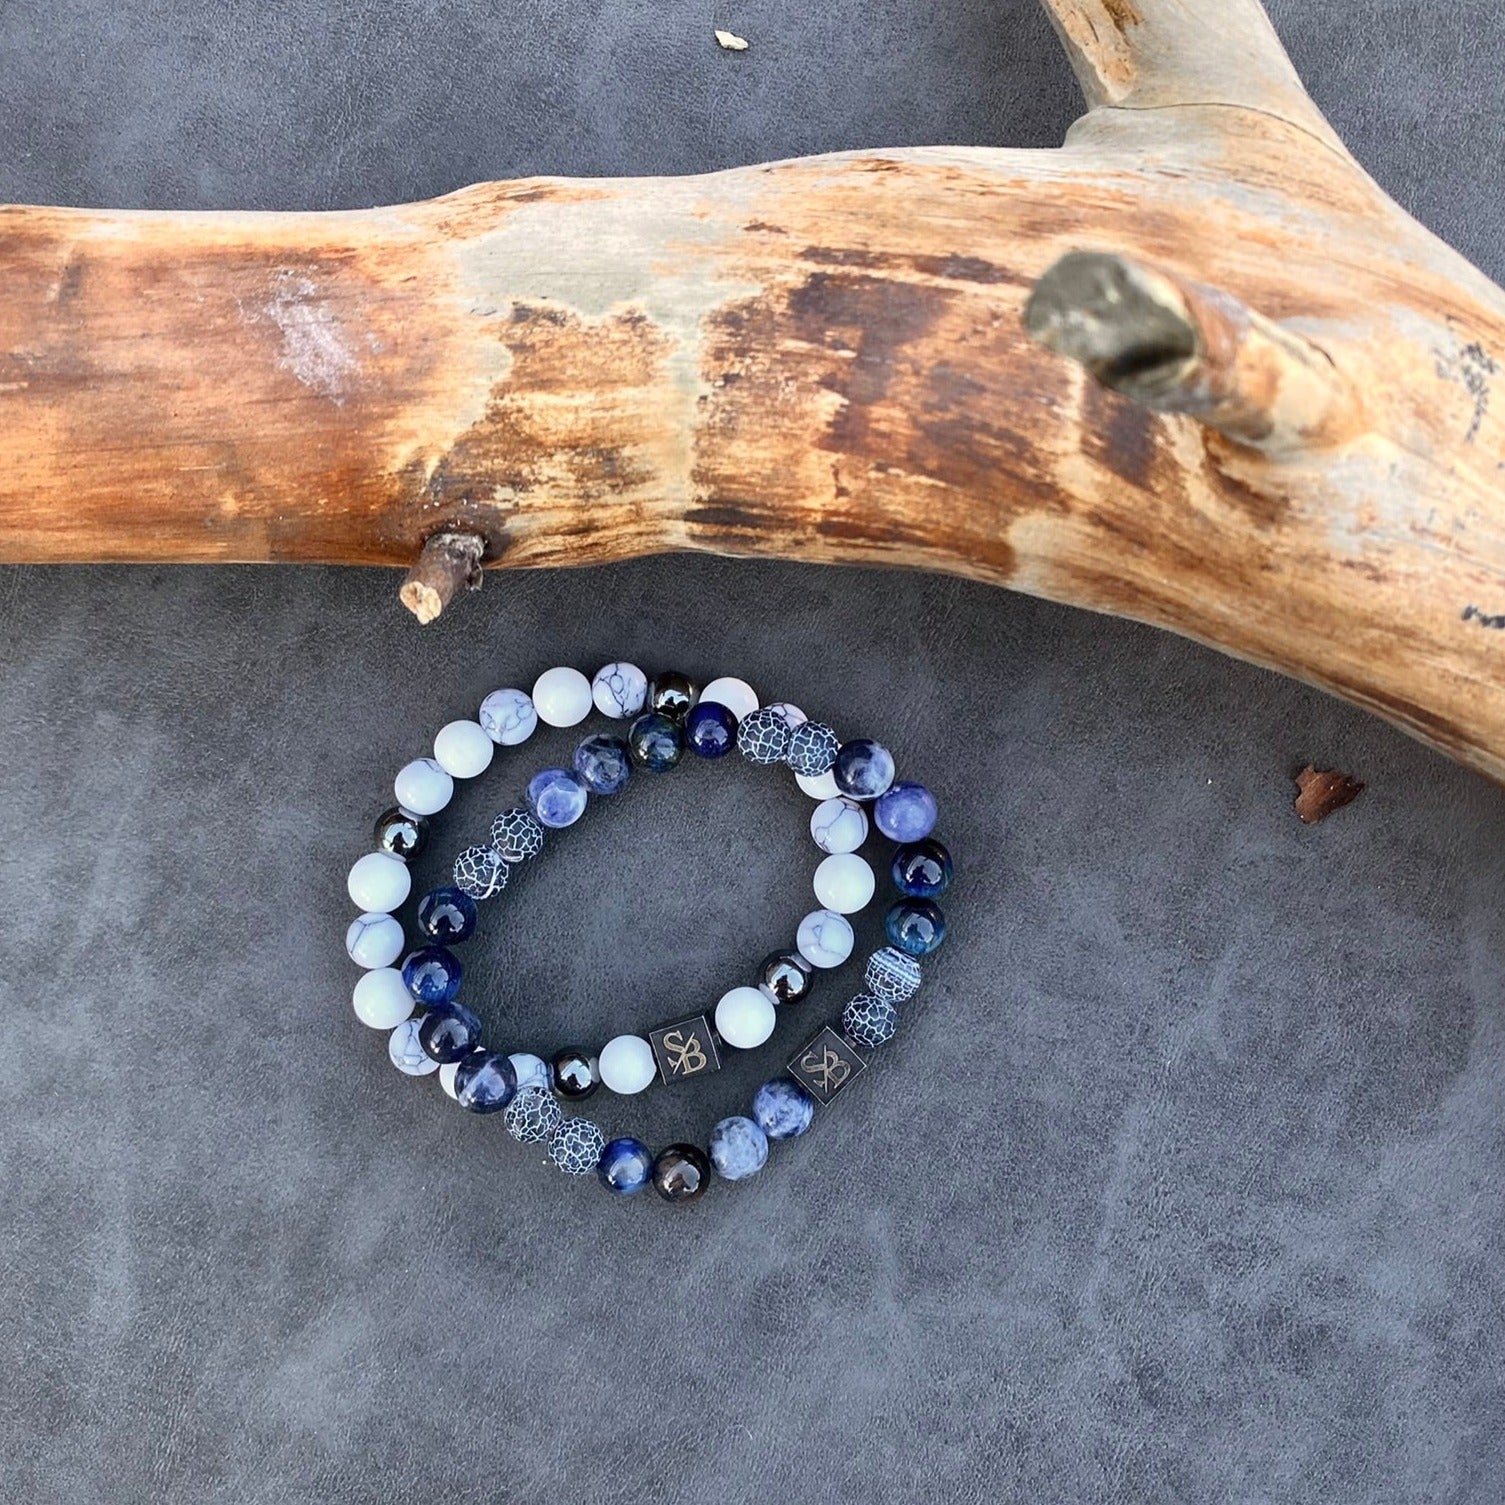 Twee Arctische | Mixed Stones (8mm) armbanden met blauwe en witte stenen bovenop een boomstam van Stoney Bracelets.